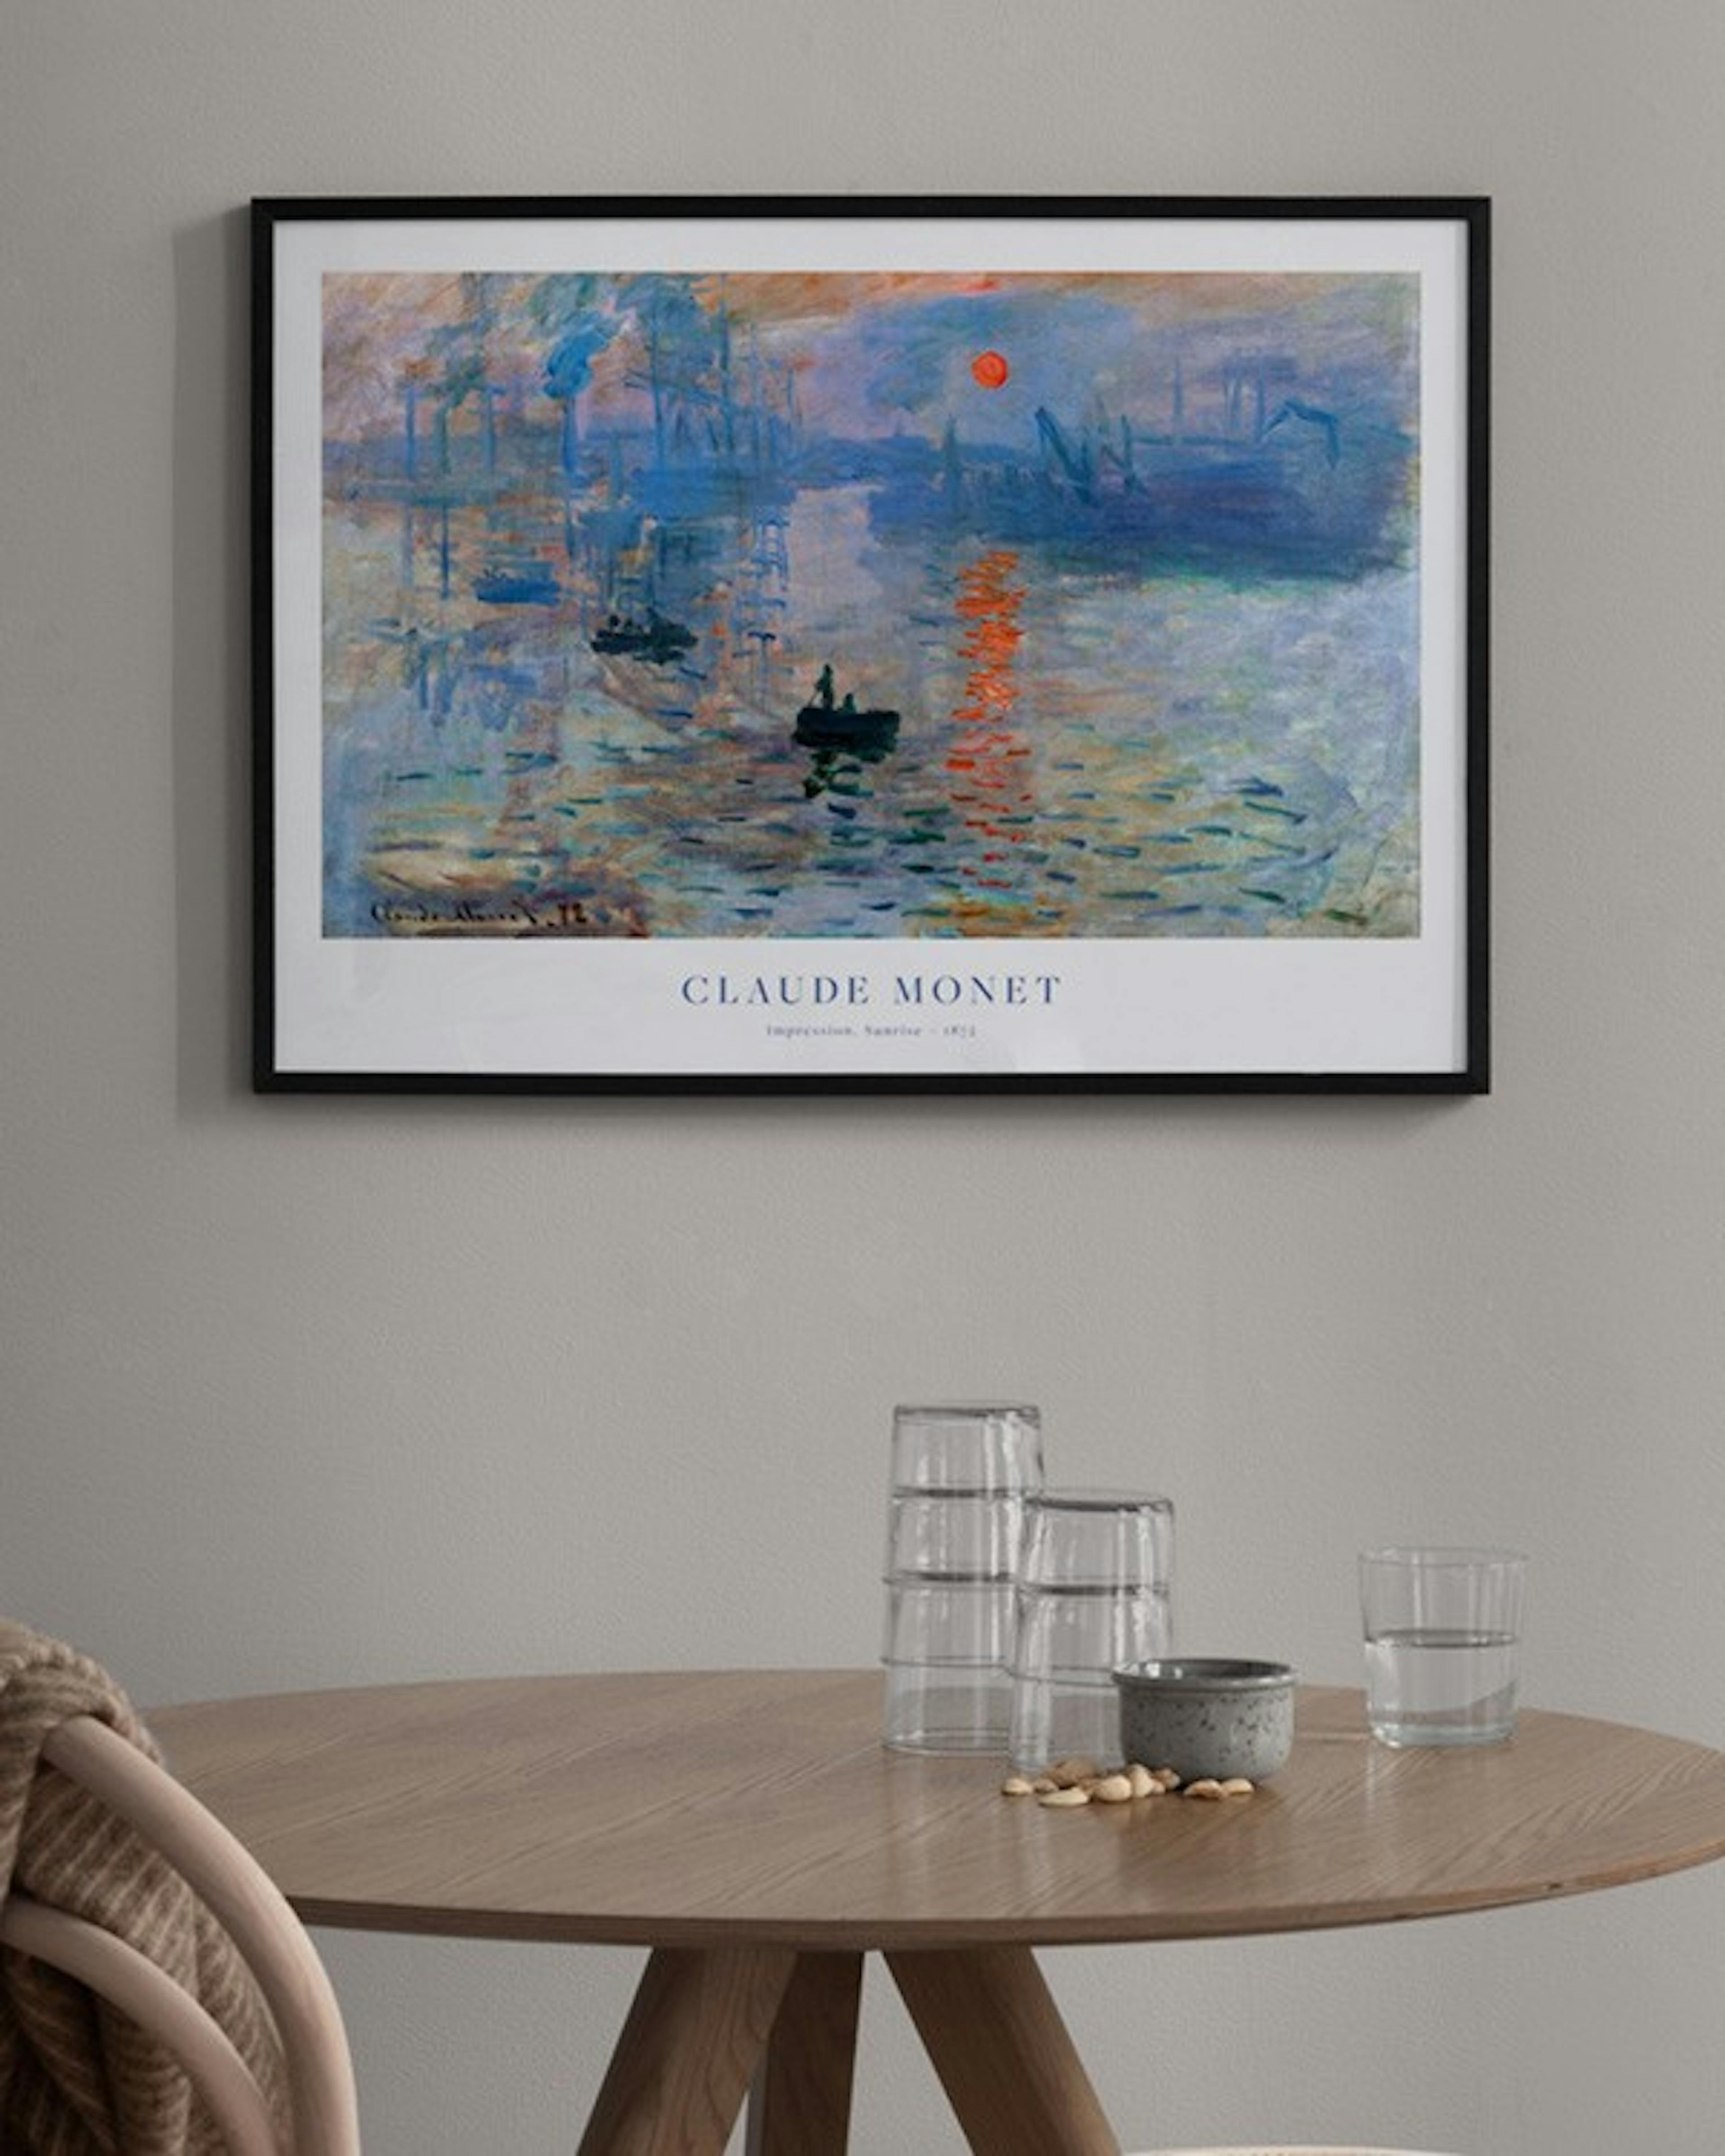 Monet - Impression, Sunrise 포스터